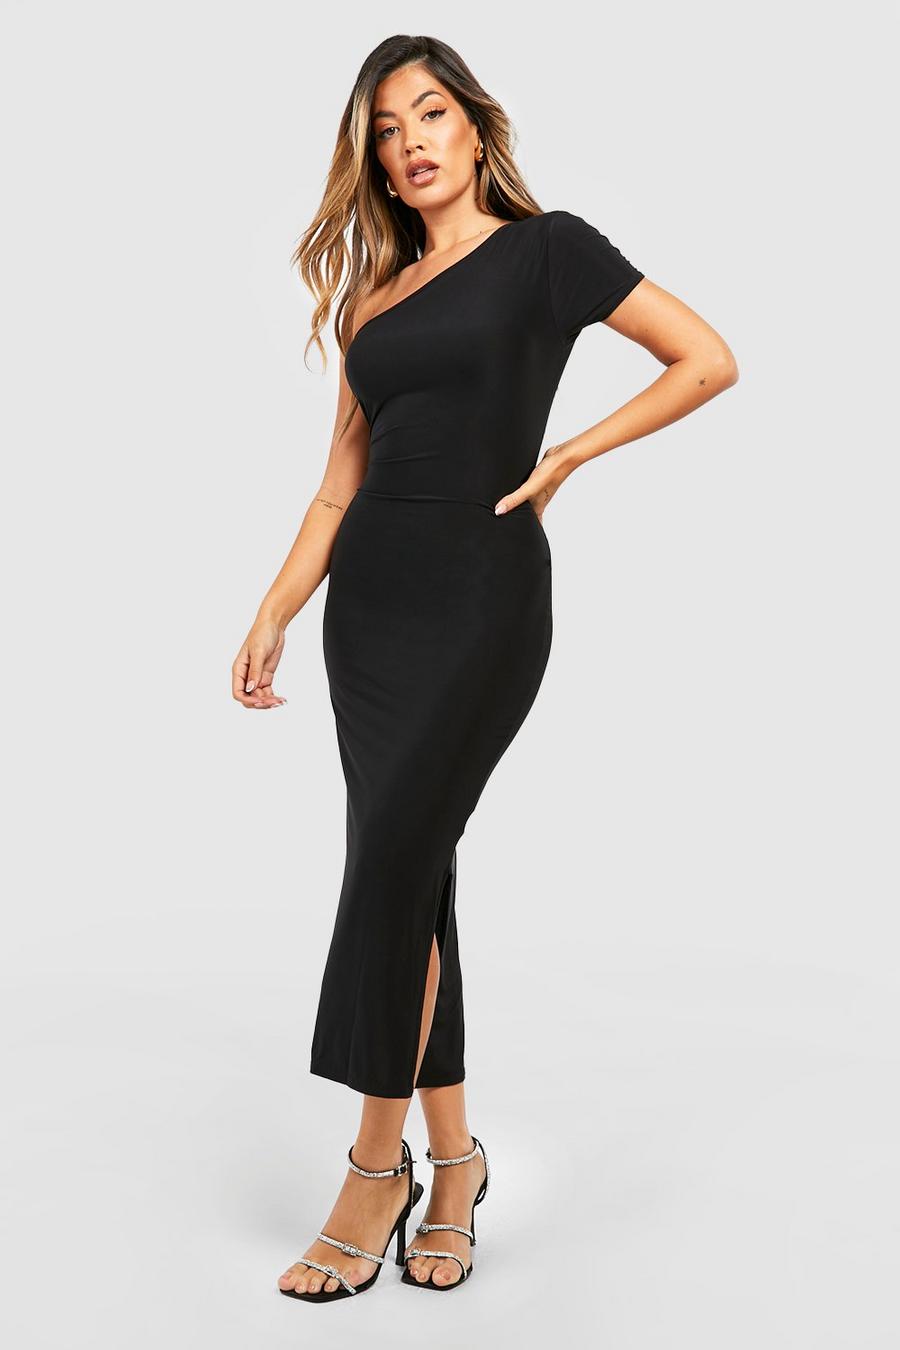 Black Slinky Cap Sleeve Asymmetric Midaxi Dress